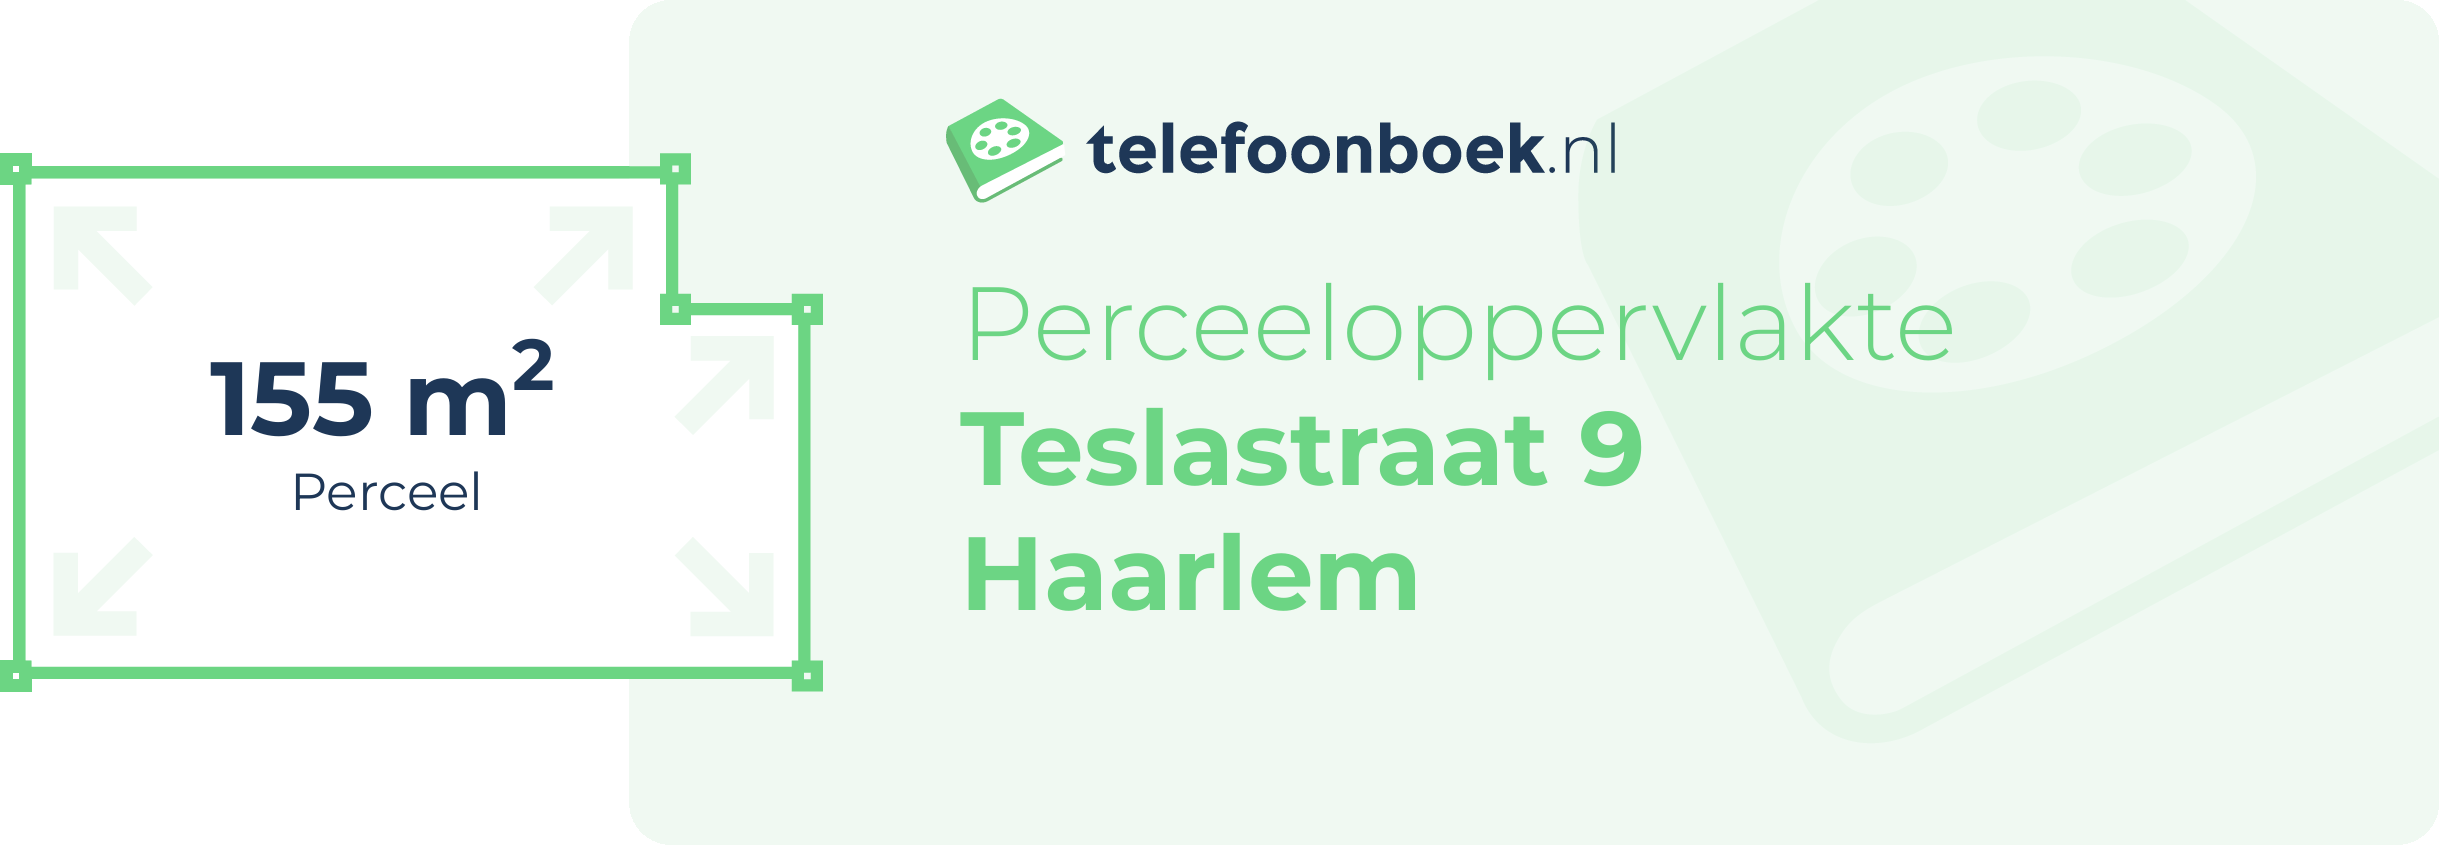 Perceeloppervlakte Teslastraat 9 Haarlem